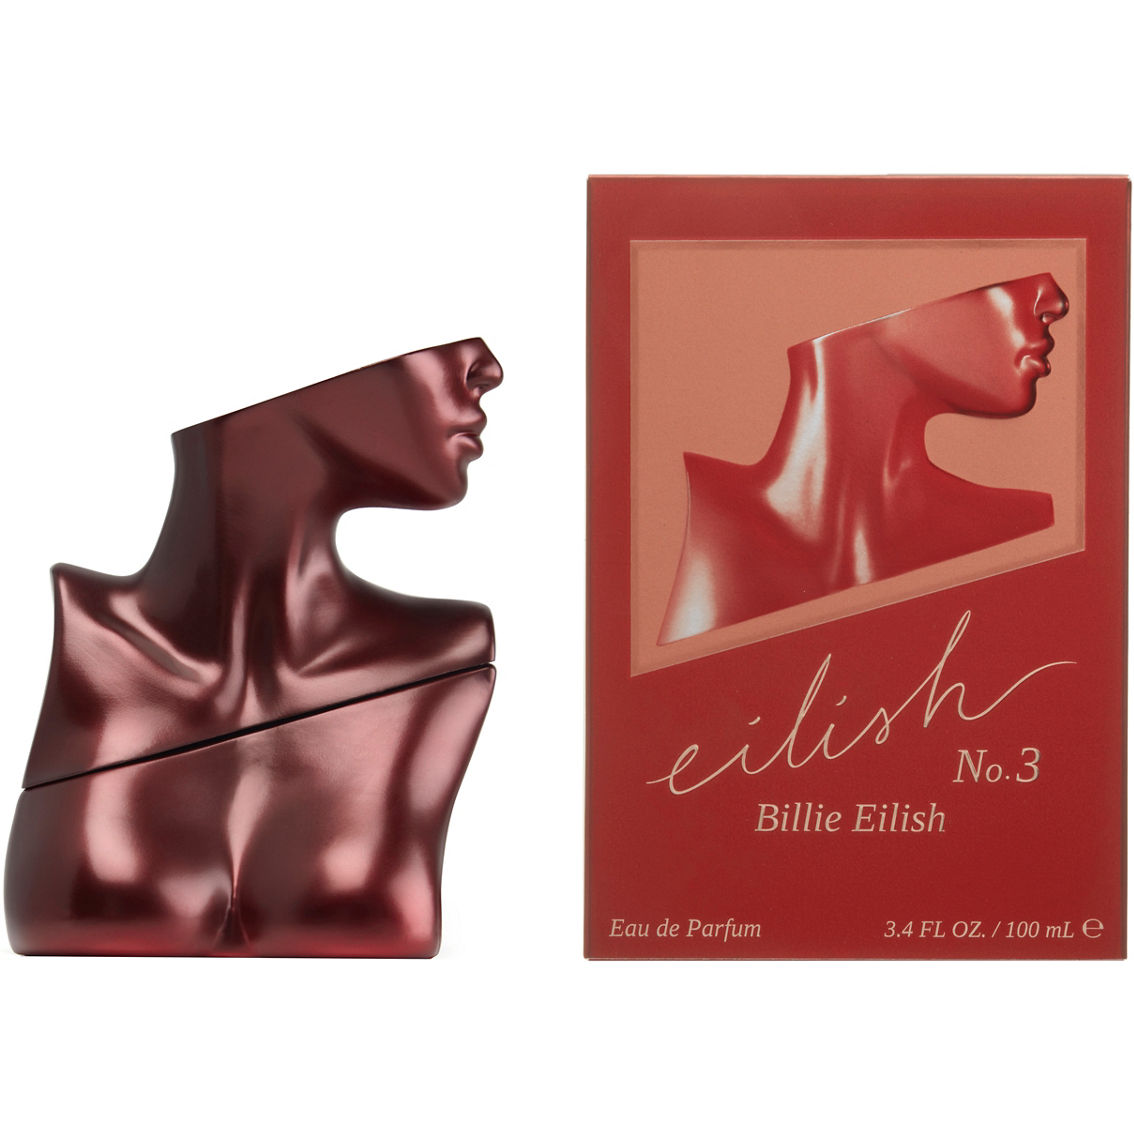 Billie Eilish Limited Edition Eilish No.3 Eau de Parfum - Image 2 of 3